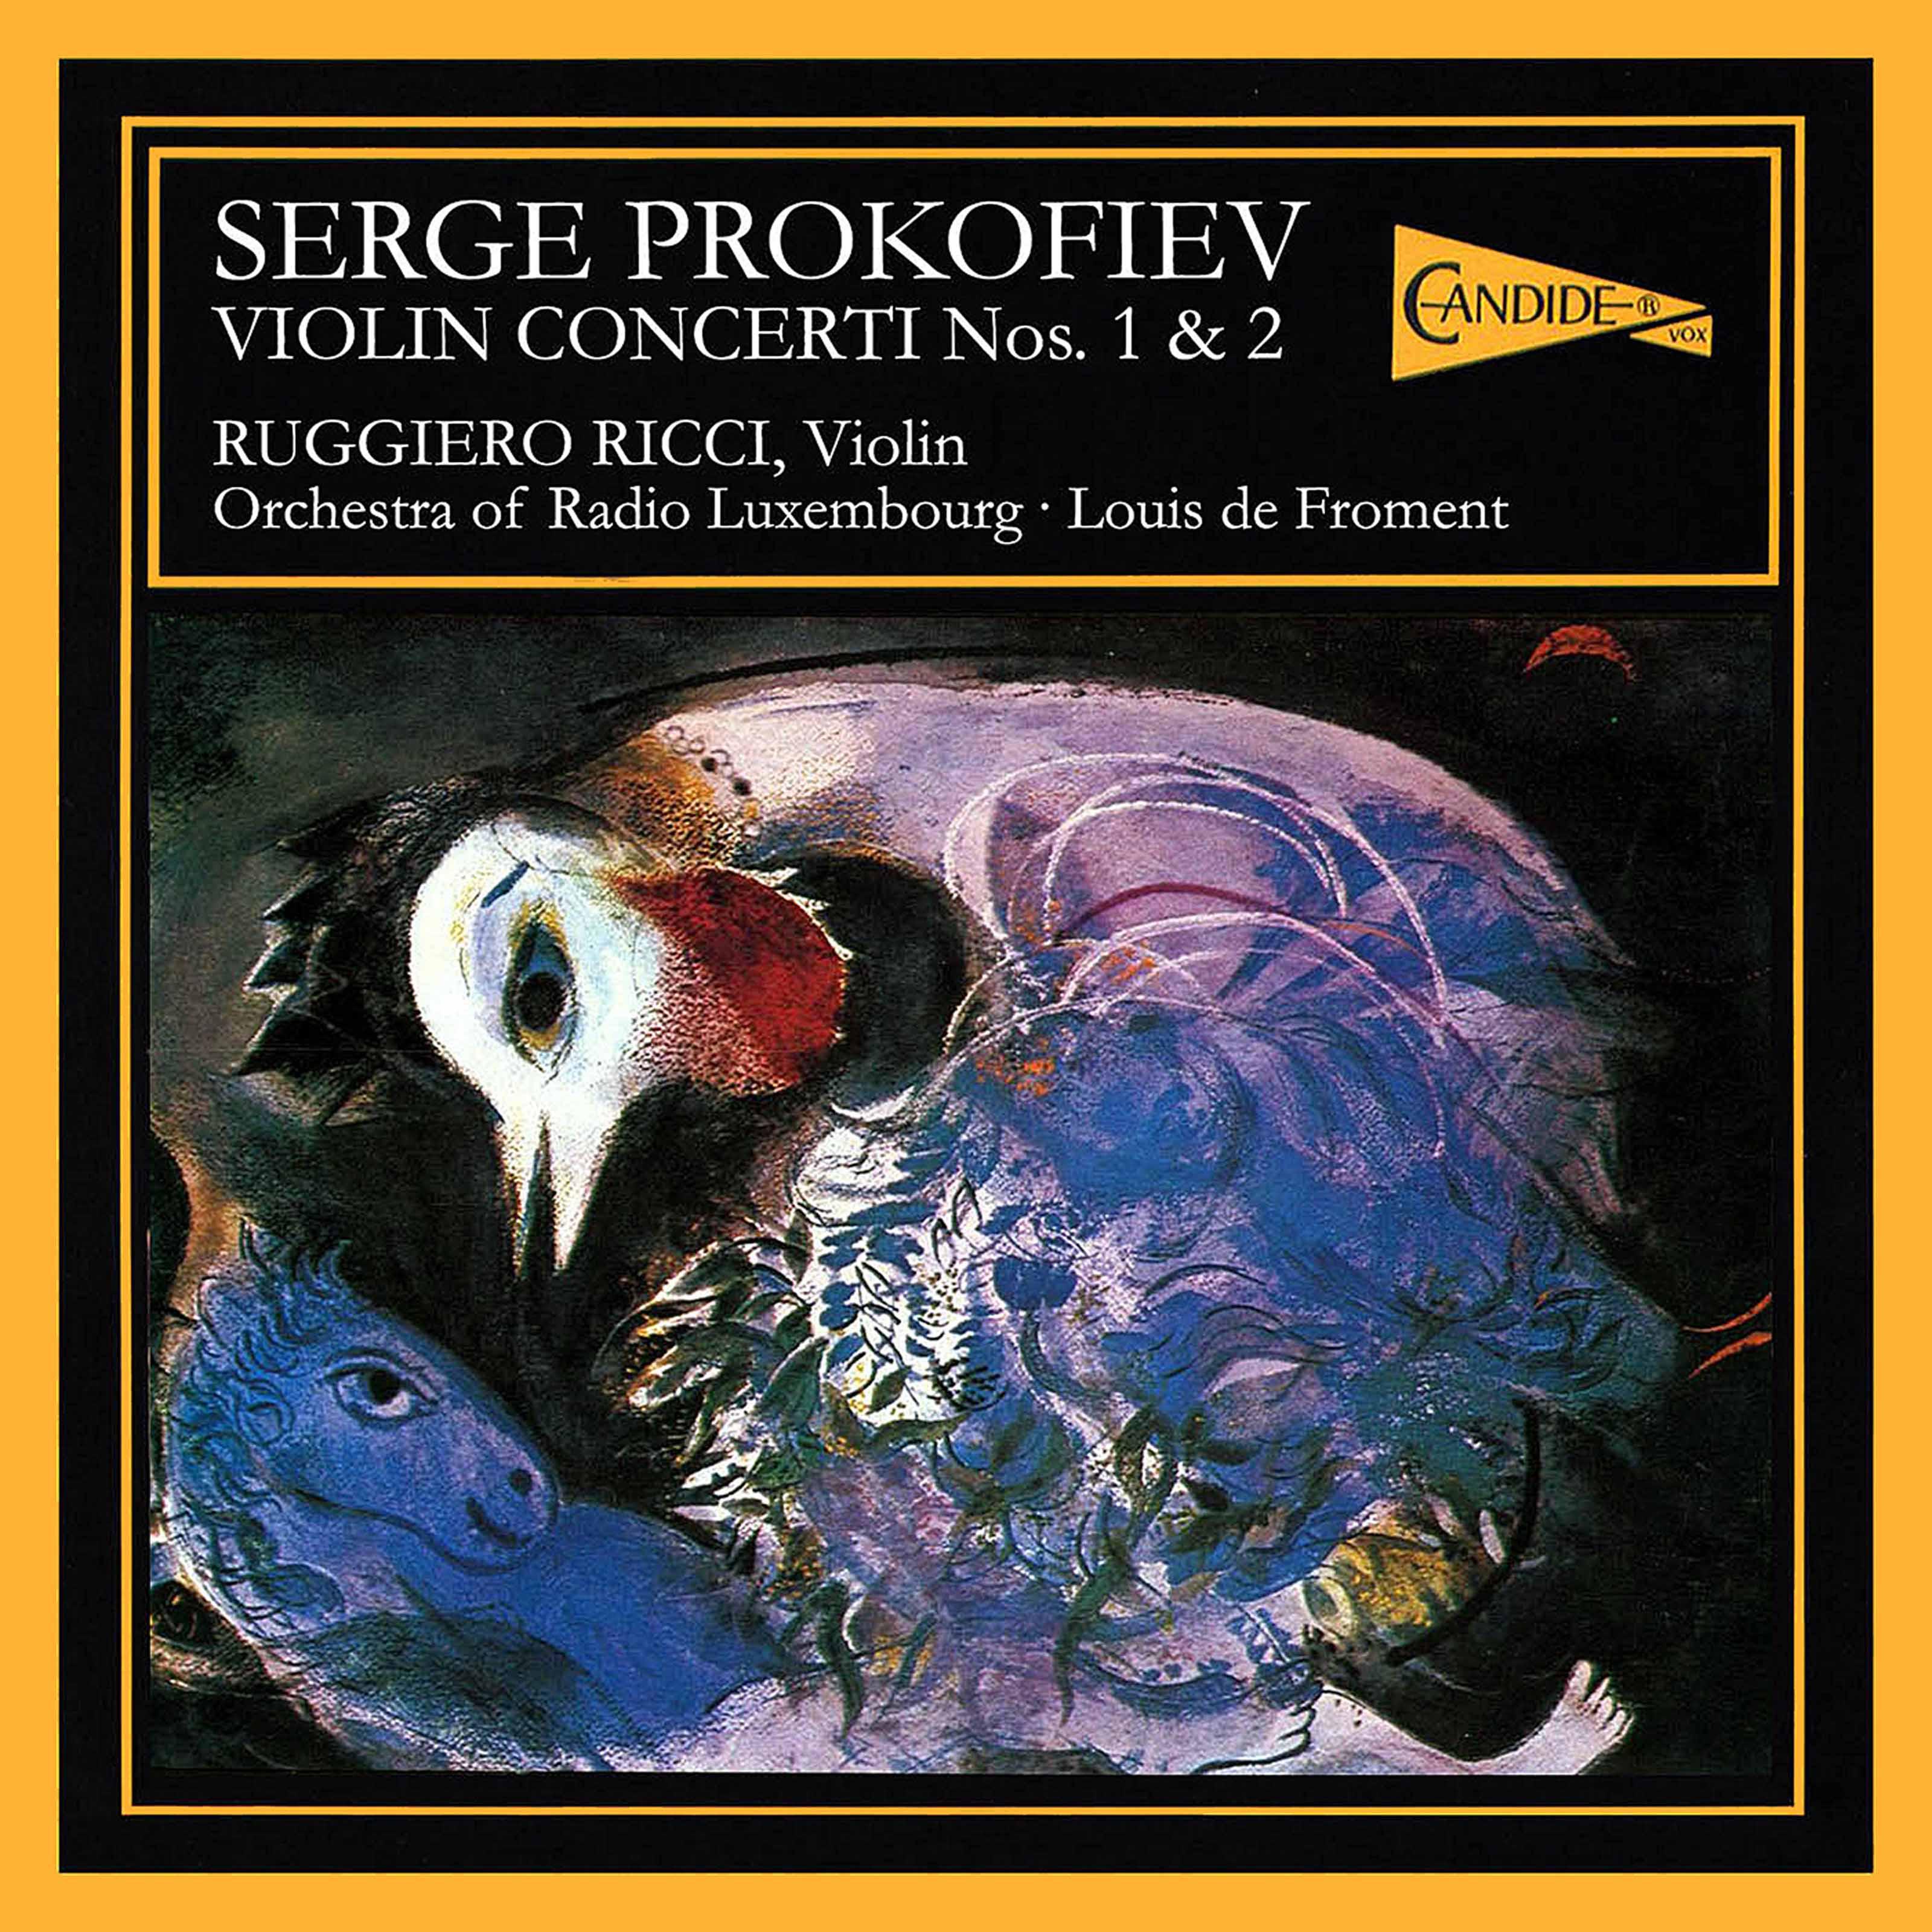 Violin Concerto No. 1 in D Major, Op. 19: III. Moderato  Allegro moderato  Moderato  Piu tranquillo